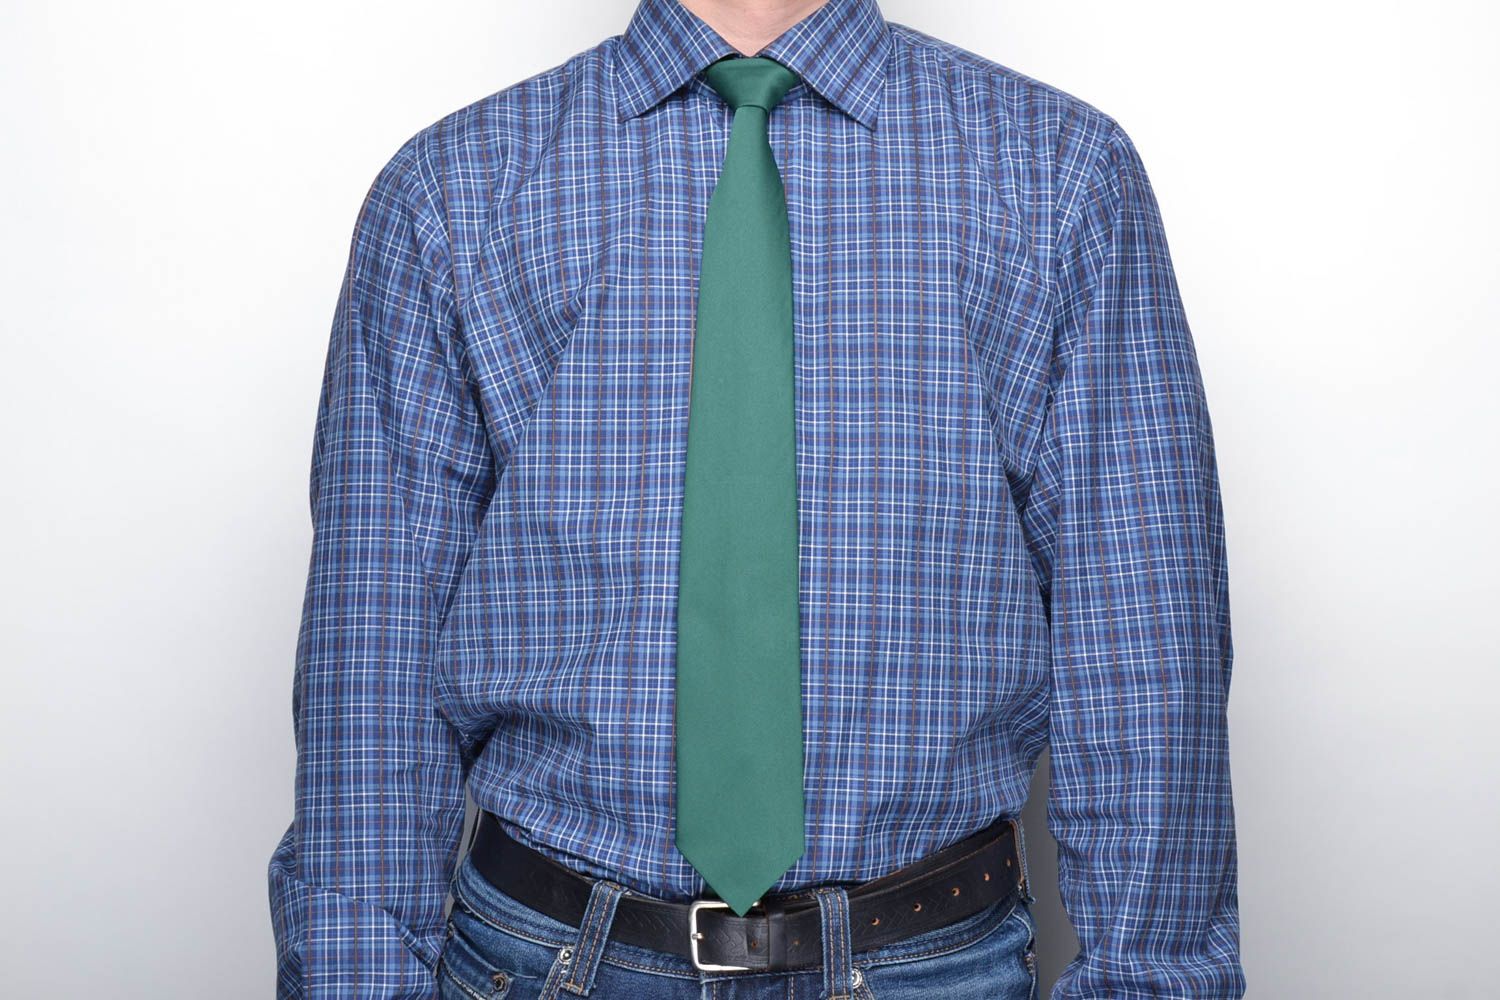 Cravate verte en tissu pour homme photo 2